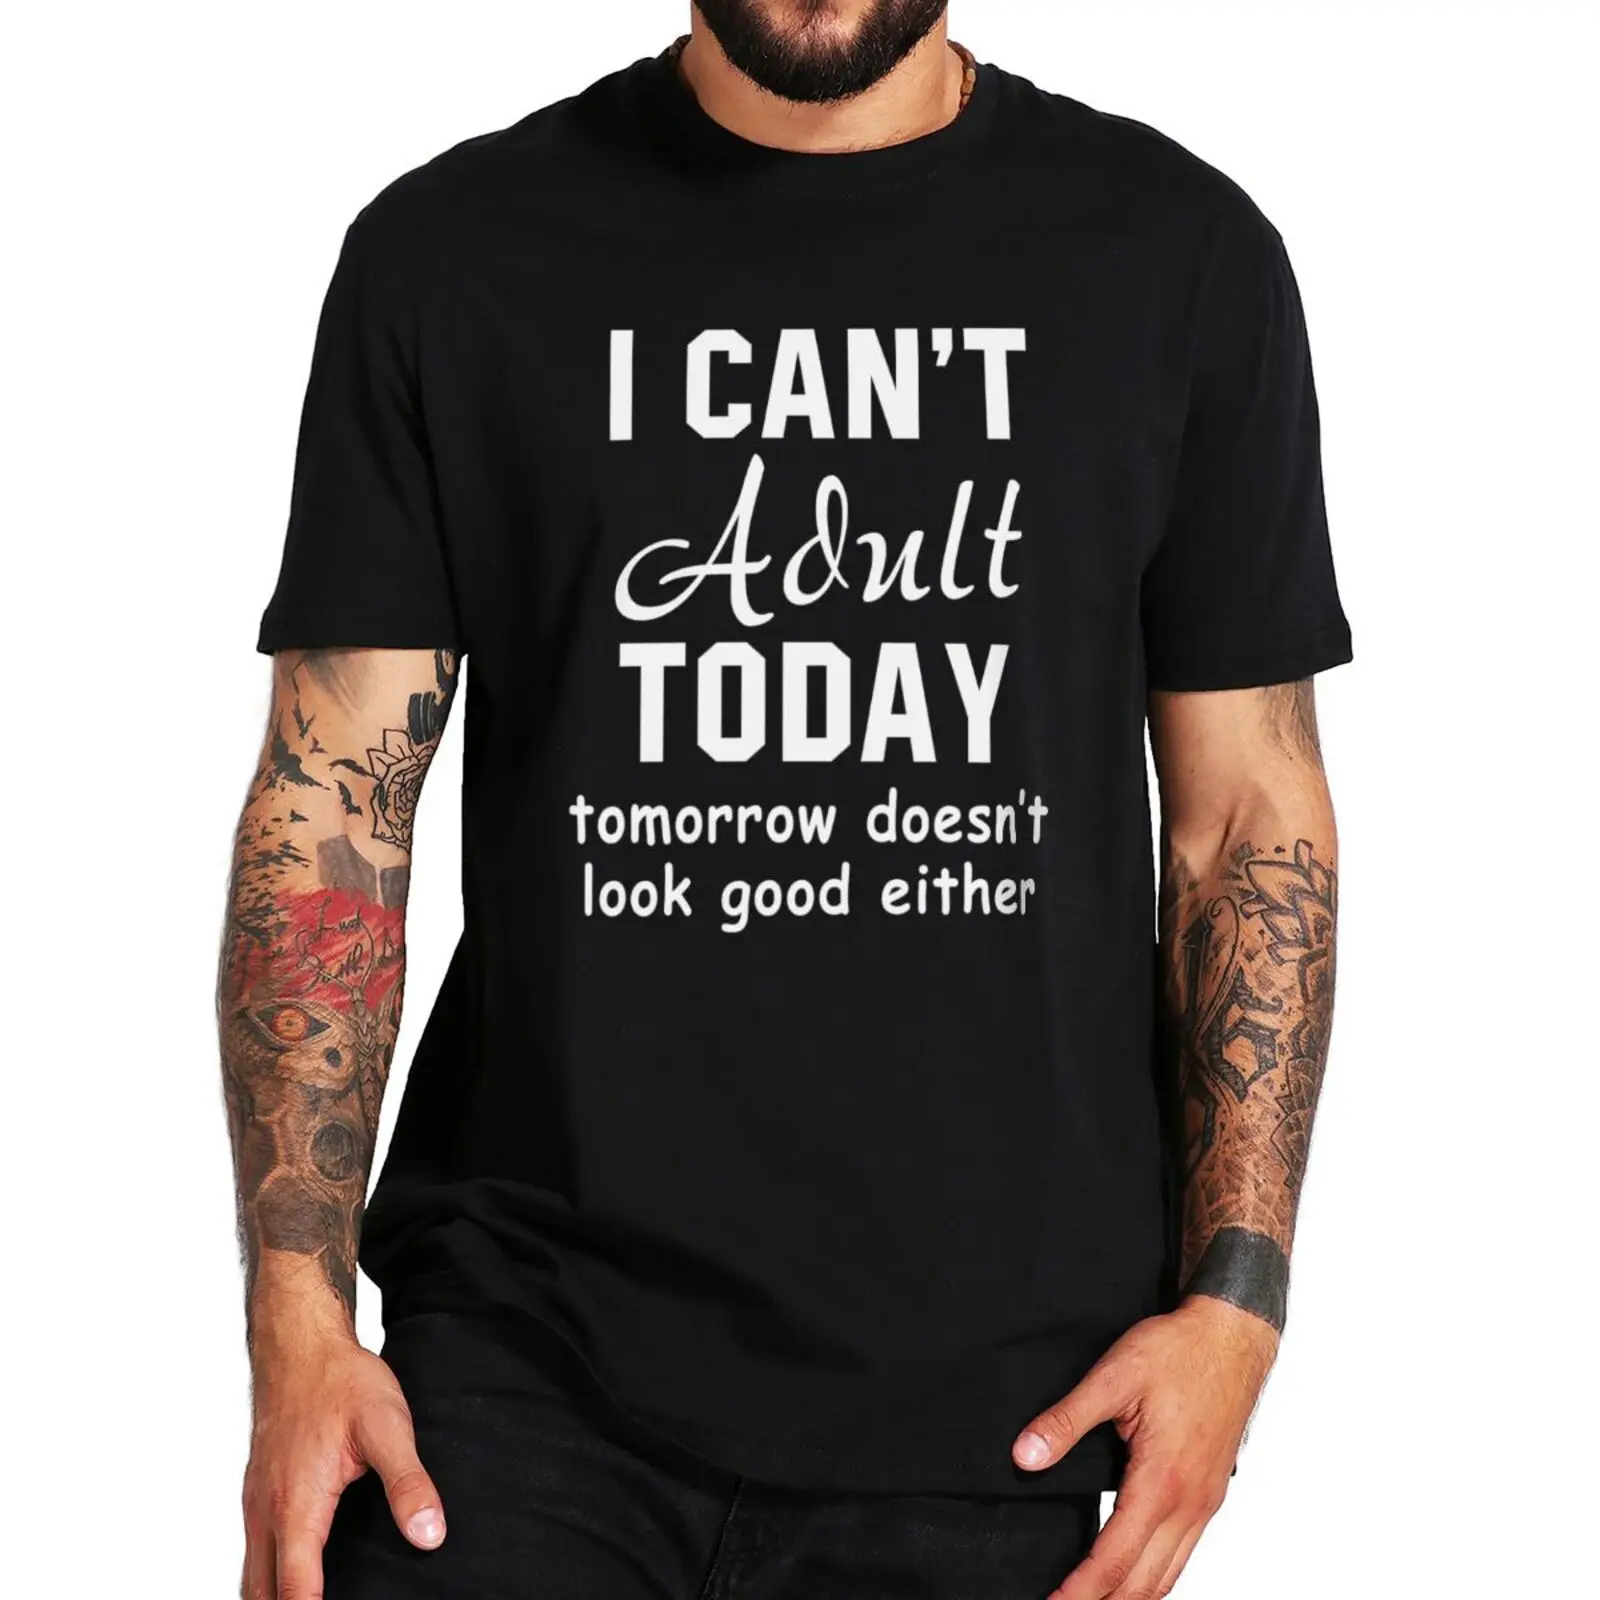 

Футболка «Я не могу взрослого сегодня завтра не выглядит хорошо», либо саркастическая Базовая футболка с надписью, топы для мужчин и женщин,...